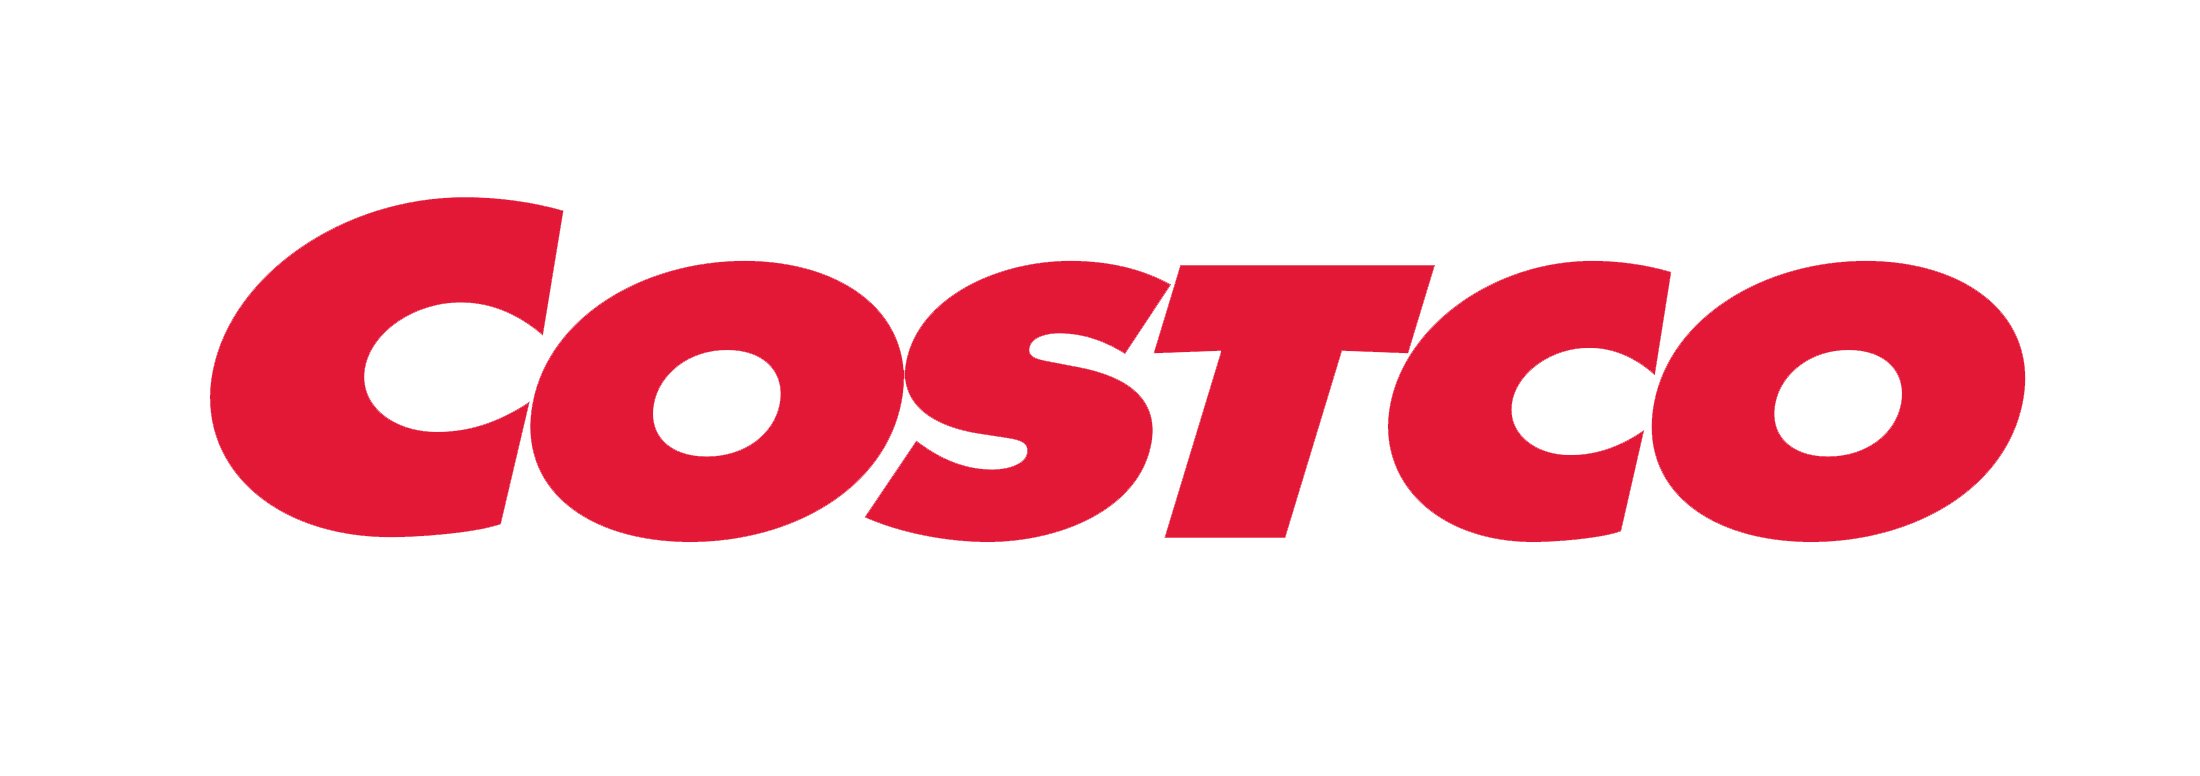 Font-Costco-Logo